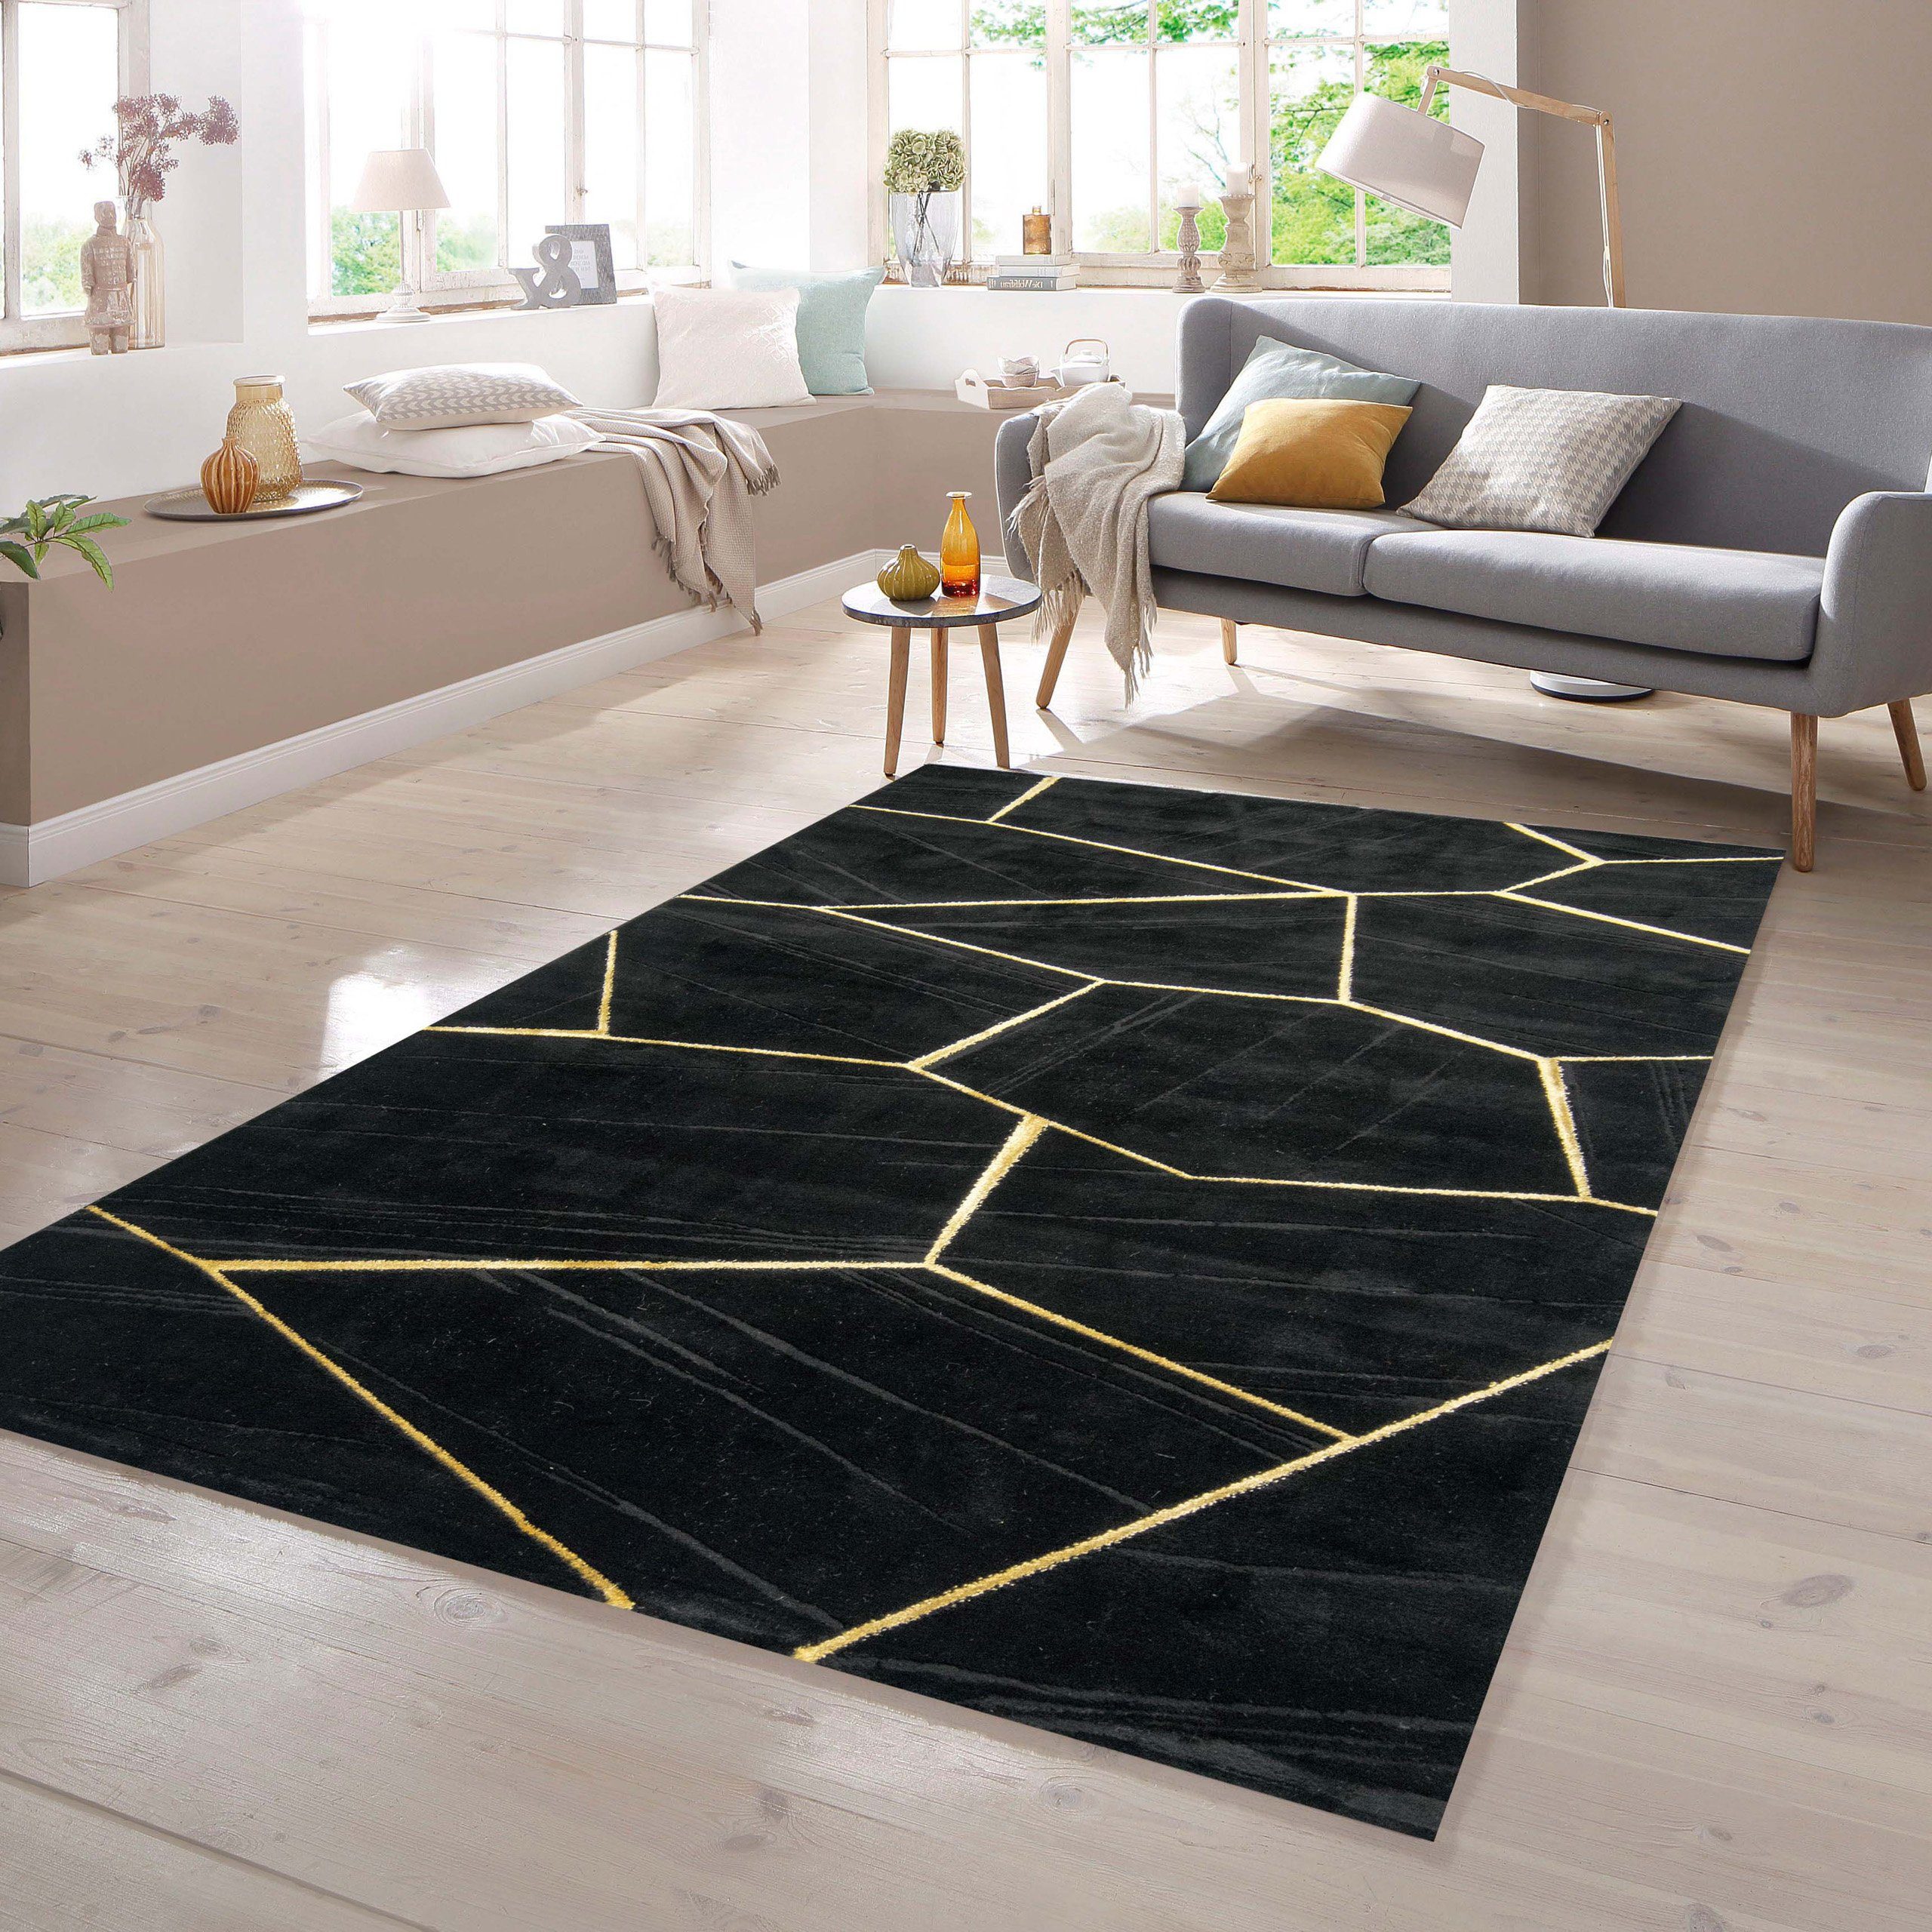 Muster TeppichHome24, schwarz rechteckig Teppich in gold, Wohnzimmerteppich geometrisches